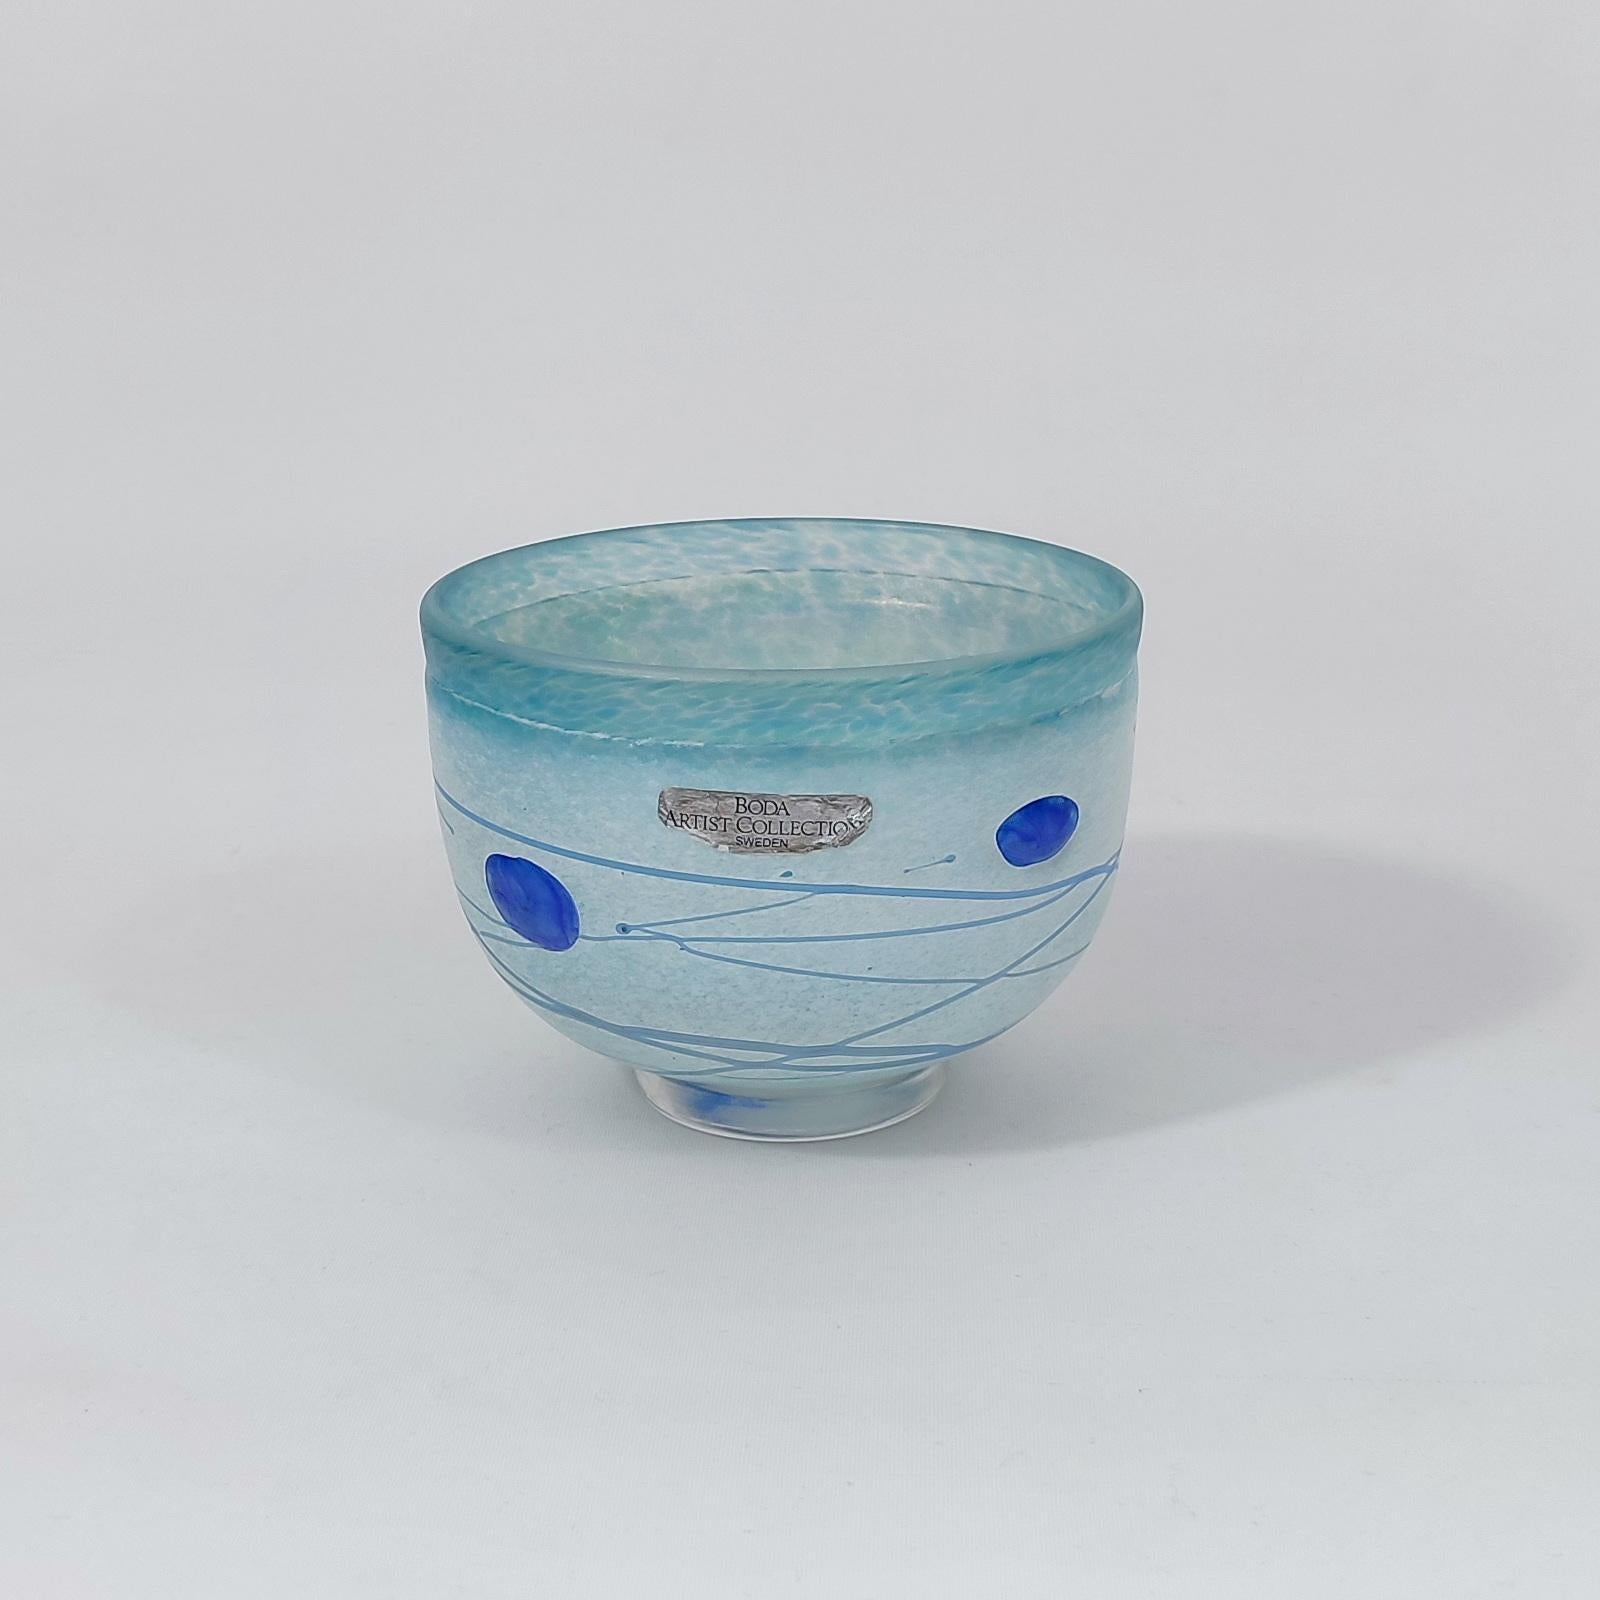 Bertil Vallien for Kosta Boda mid-century blue galaxy glass bowl, Suède, années 1980. 
Un bol en verre irisé laiteux avec des taches, des traînées et des fils bleus. Signé sous le bas Boda Artist Co B. Vallien. Excellent état.
Dimensions : diamètre